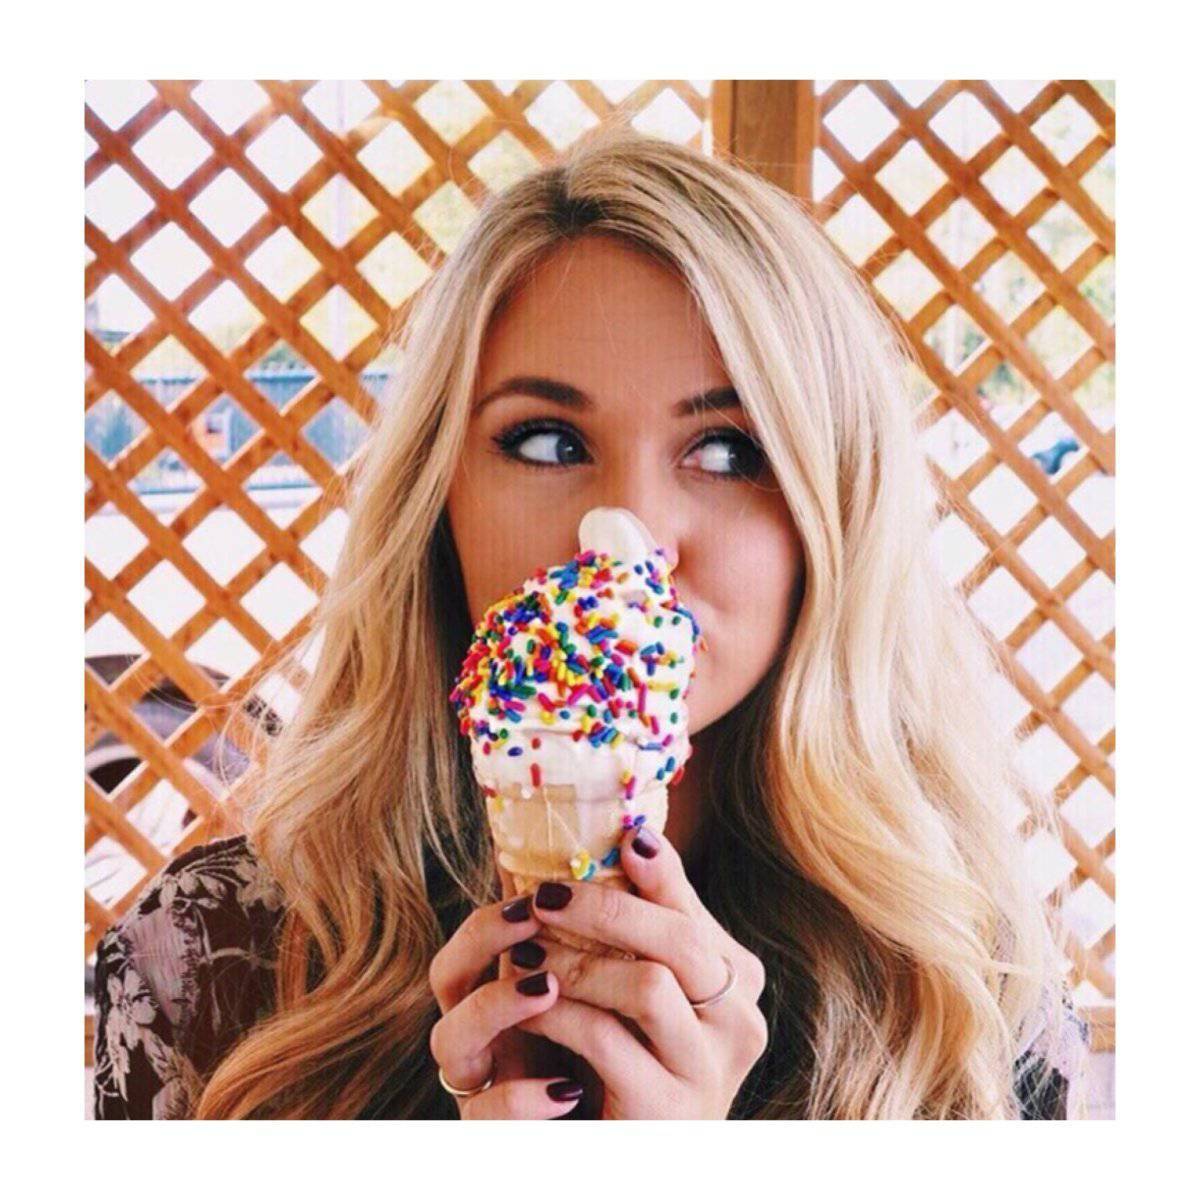 Вкус на девушек. Девушка с мороженым. Красивая девушка с мороженым. Фотосессия с мороженым. Красивое мороженое.